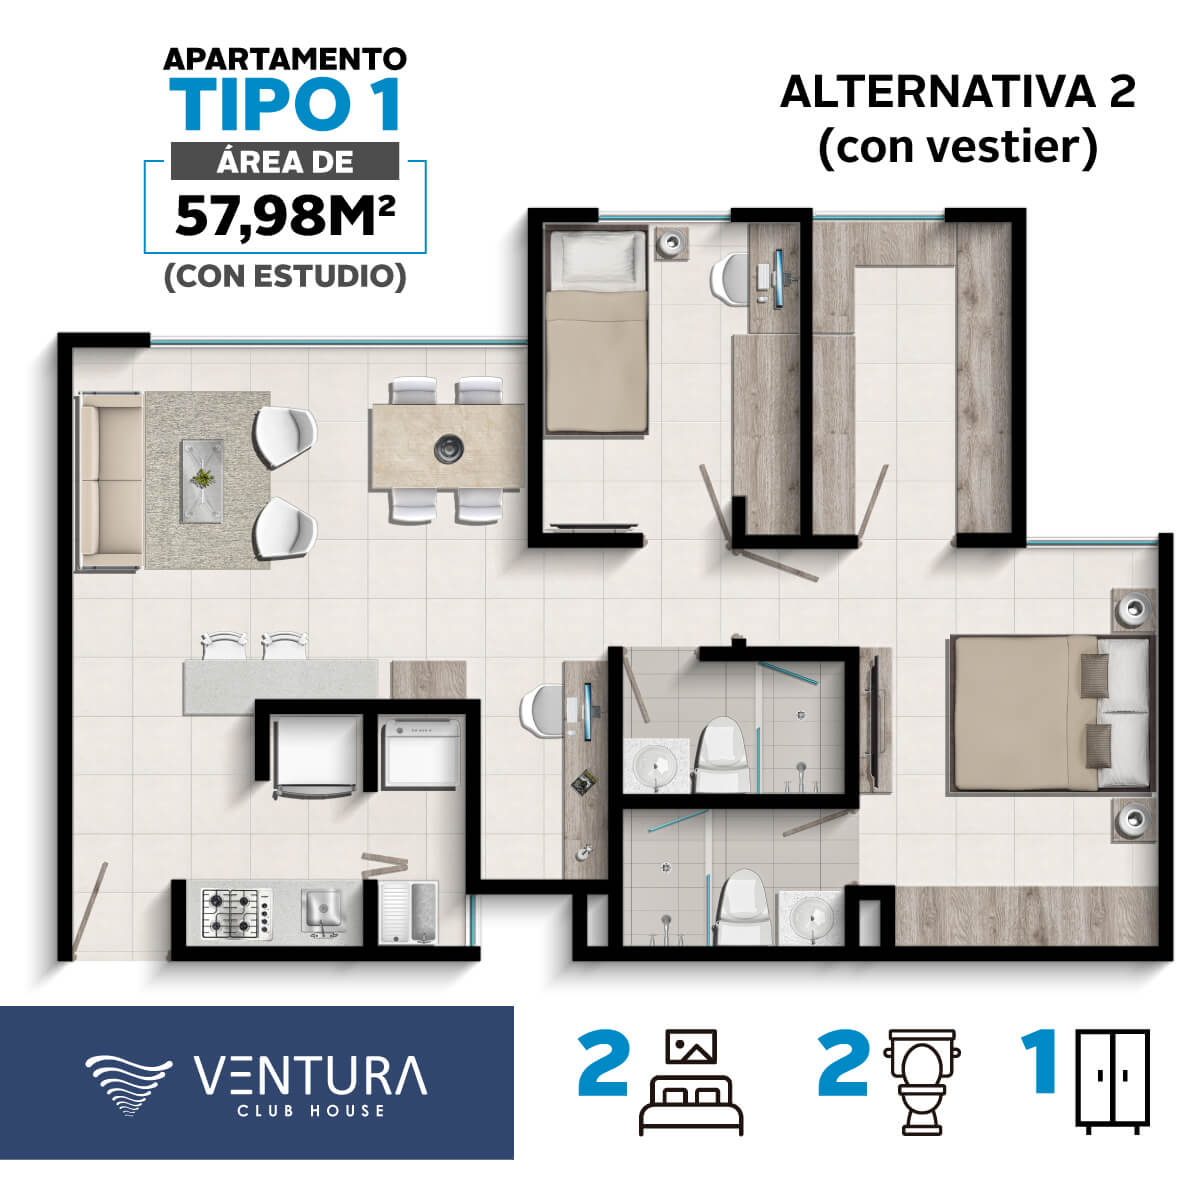 Tipos-Aptos-Ventura-apartamento-tipo1-alternativa2-cyu-colombia